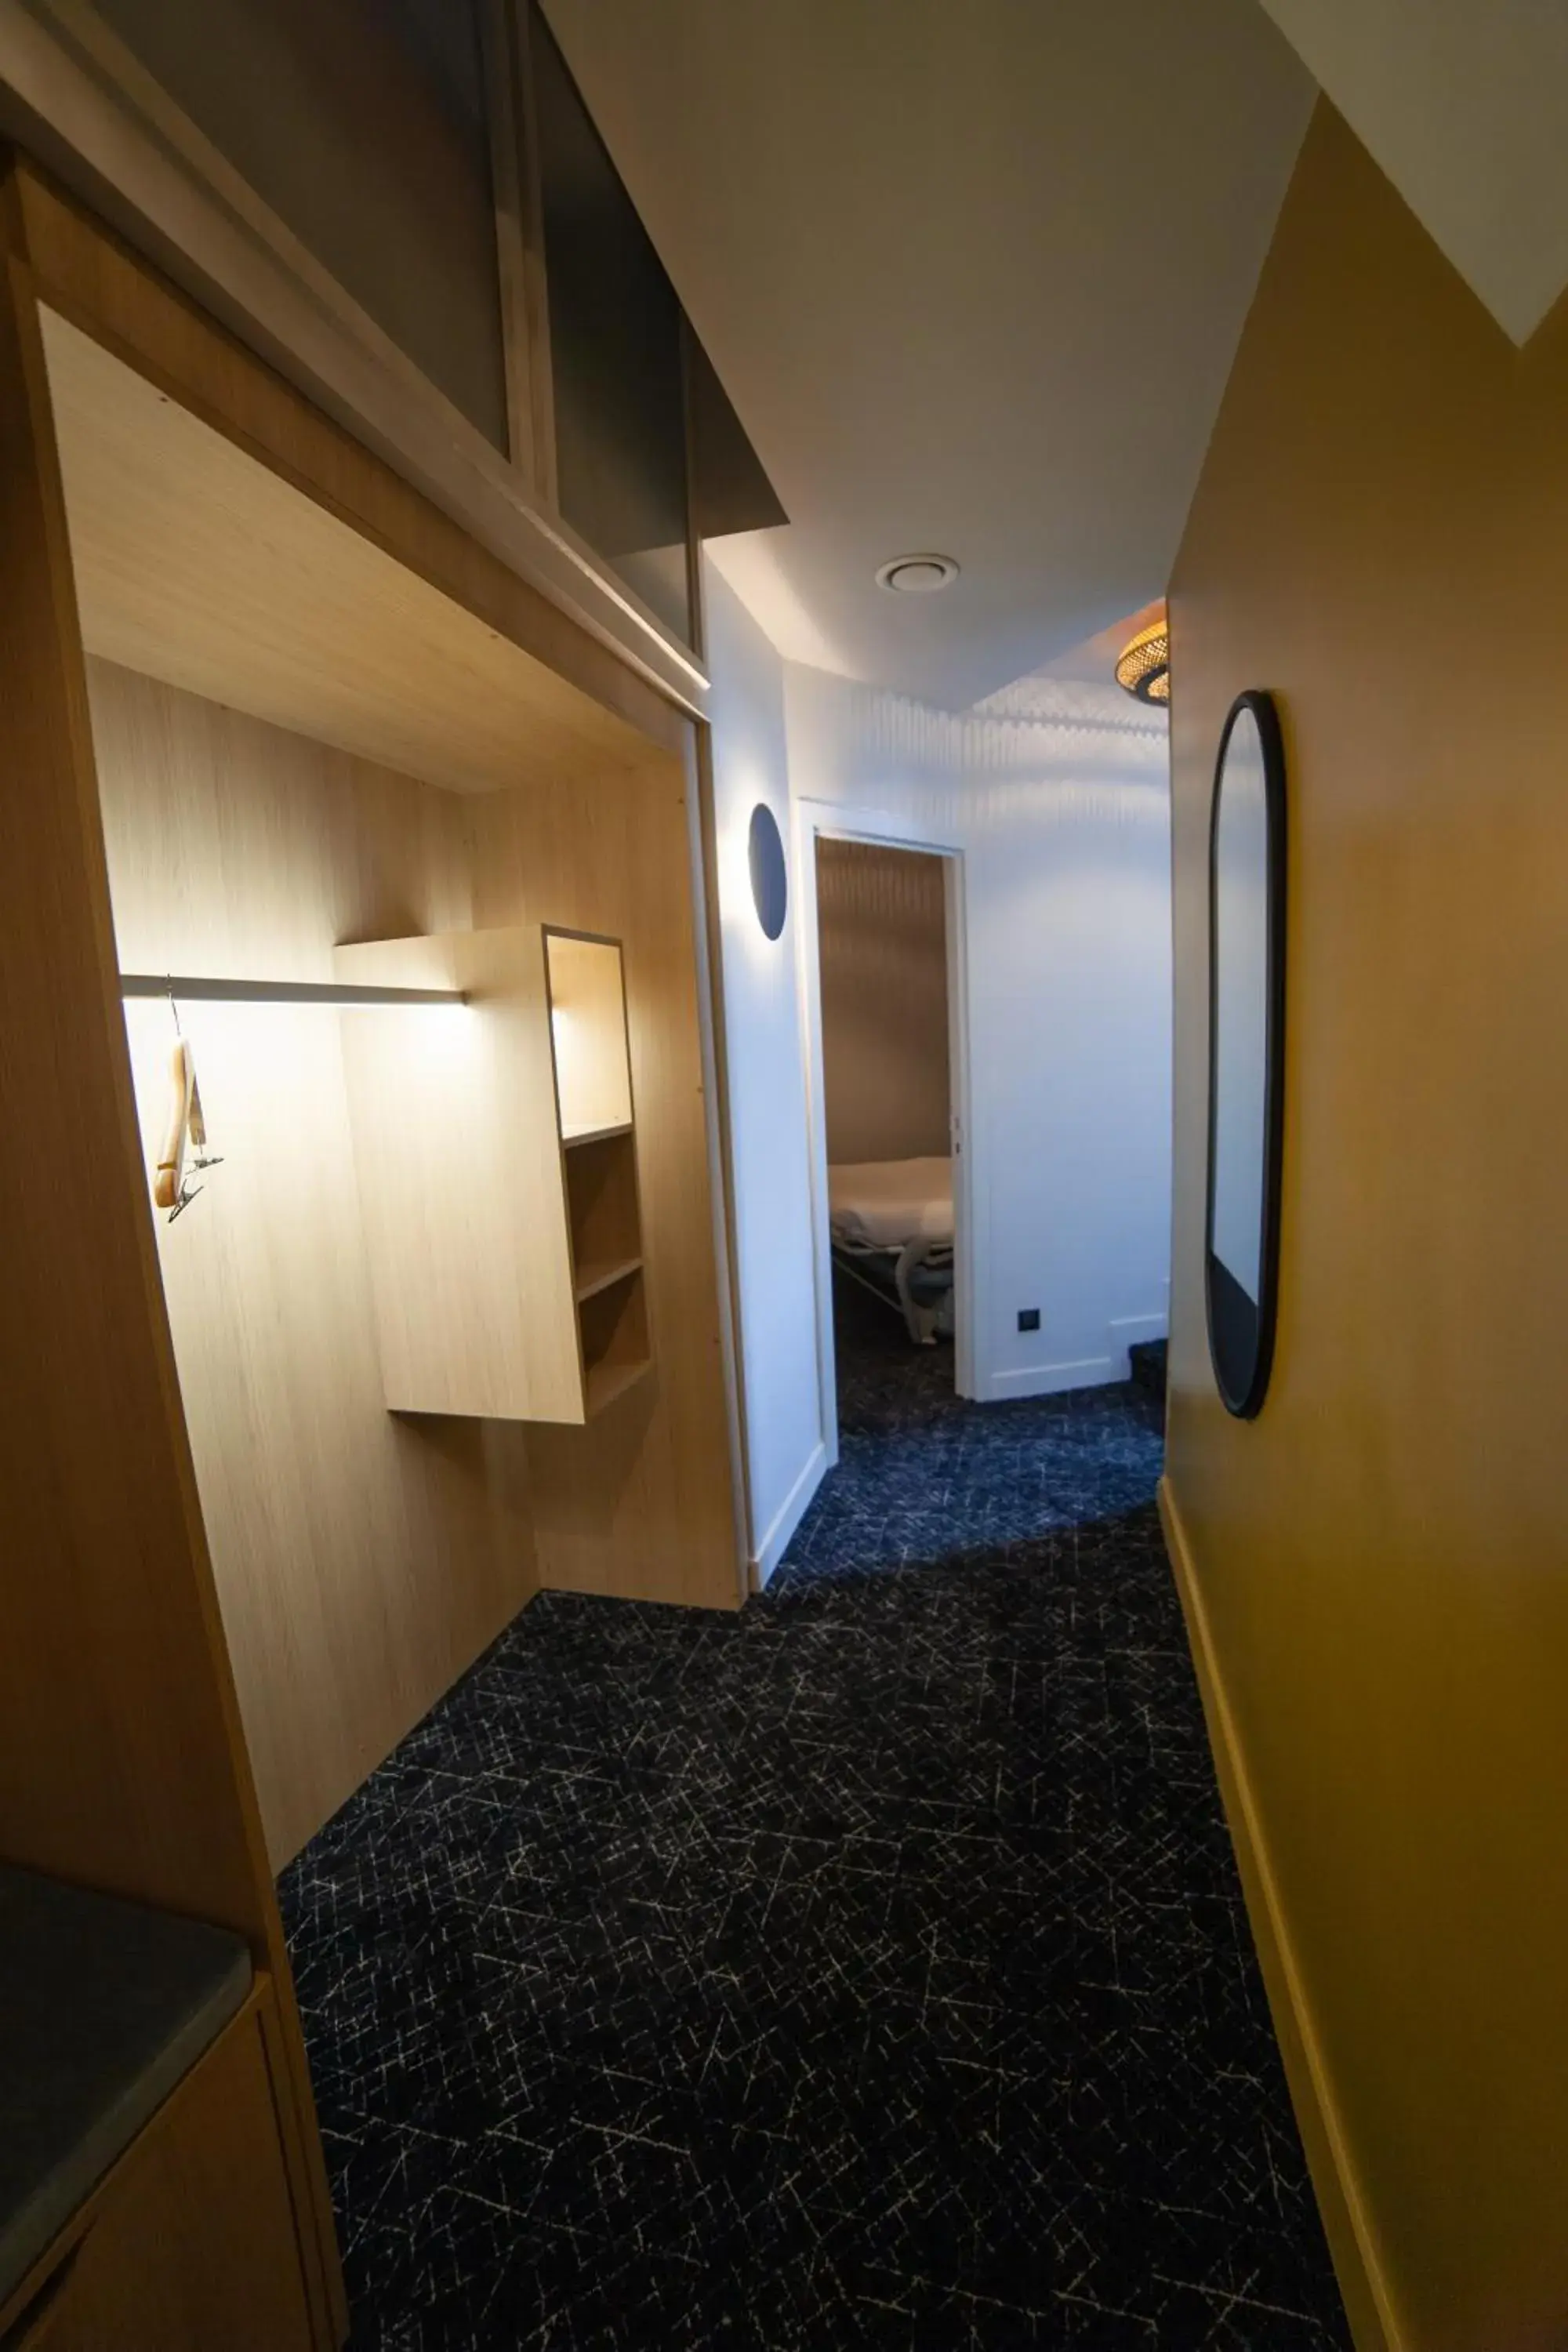 Bedroom, Bathroom in Hotel Kana